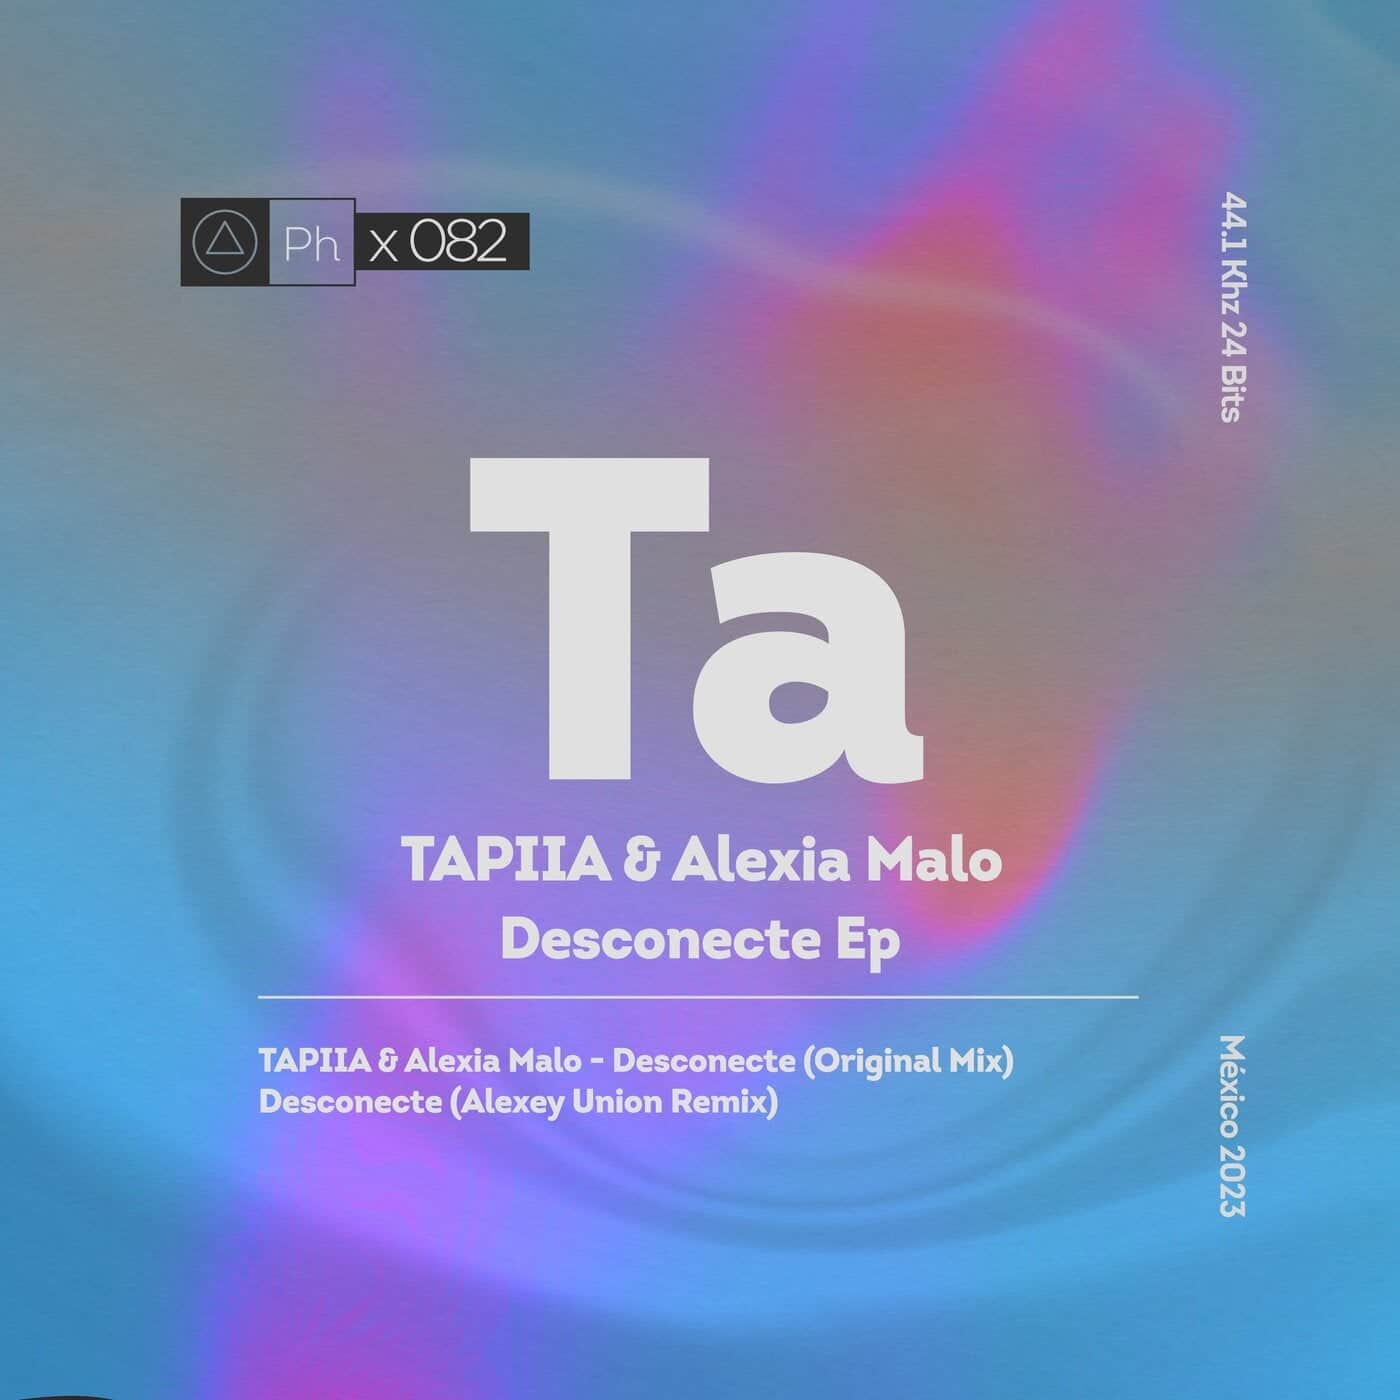 Download TAPIIA, Alexia Malo - Desconecte on Electrobuzz